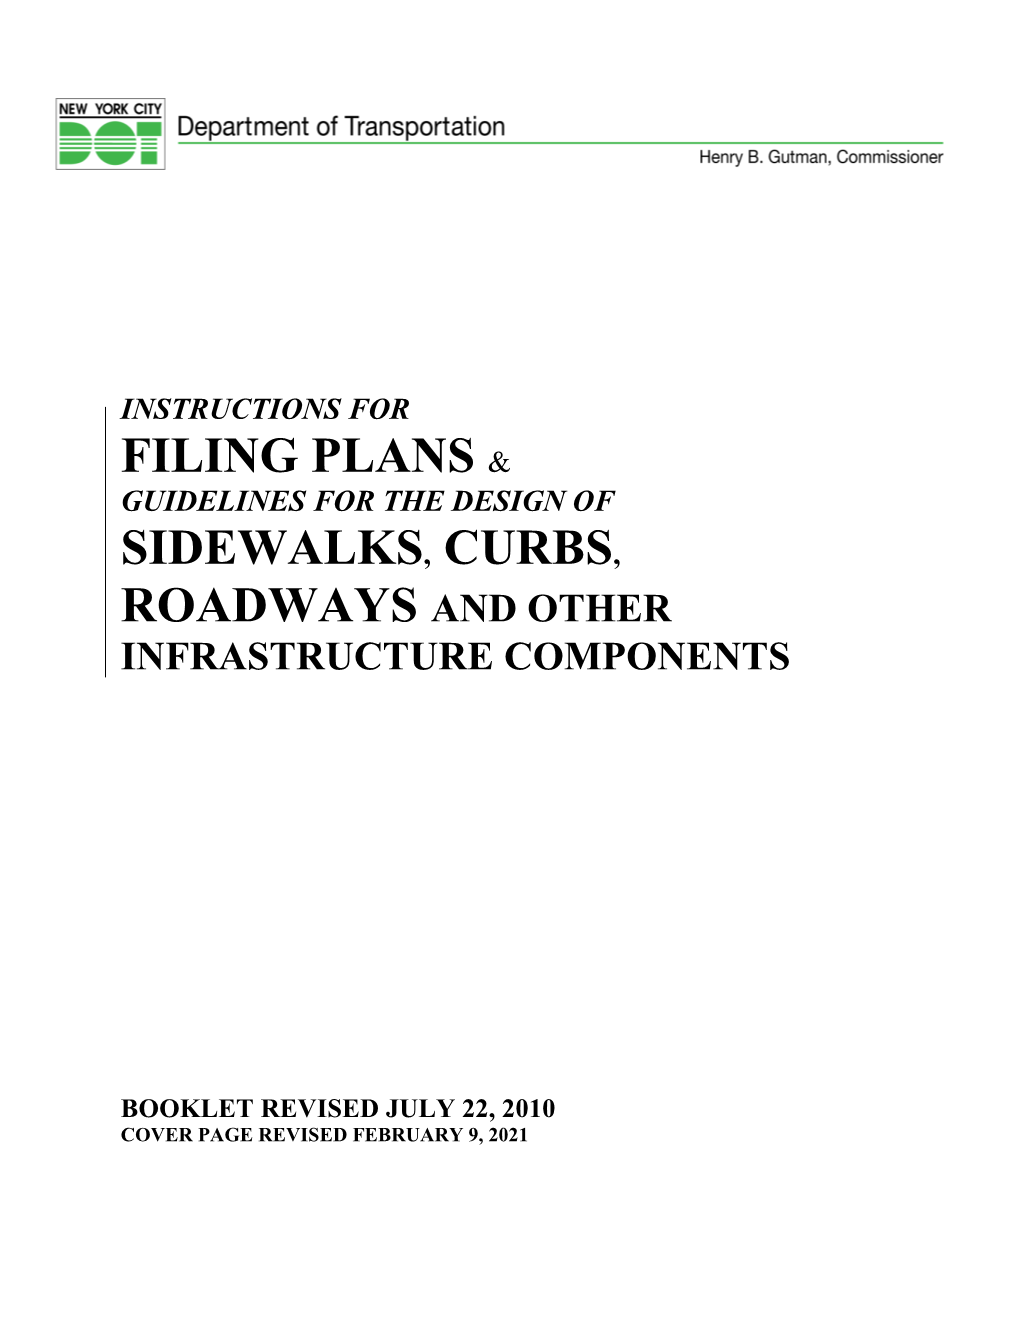 Sidewalk, Curb & Roadway Application